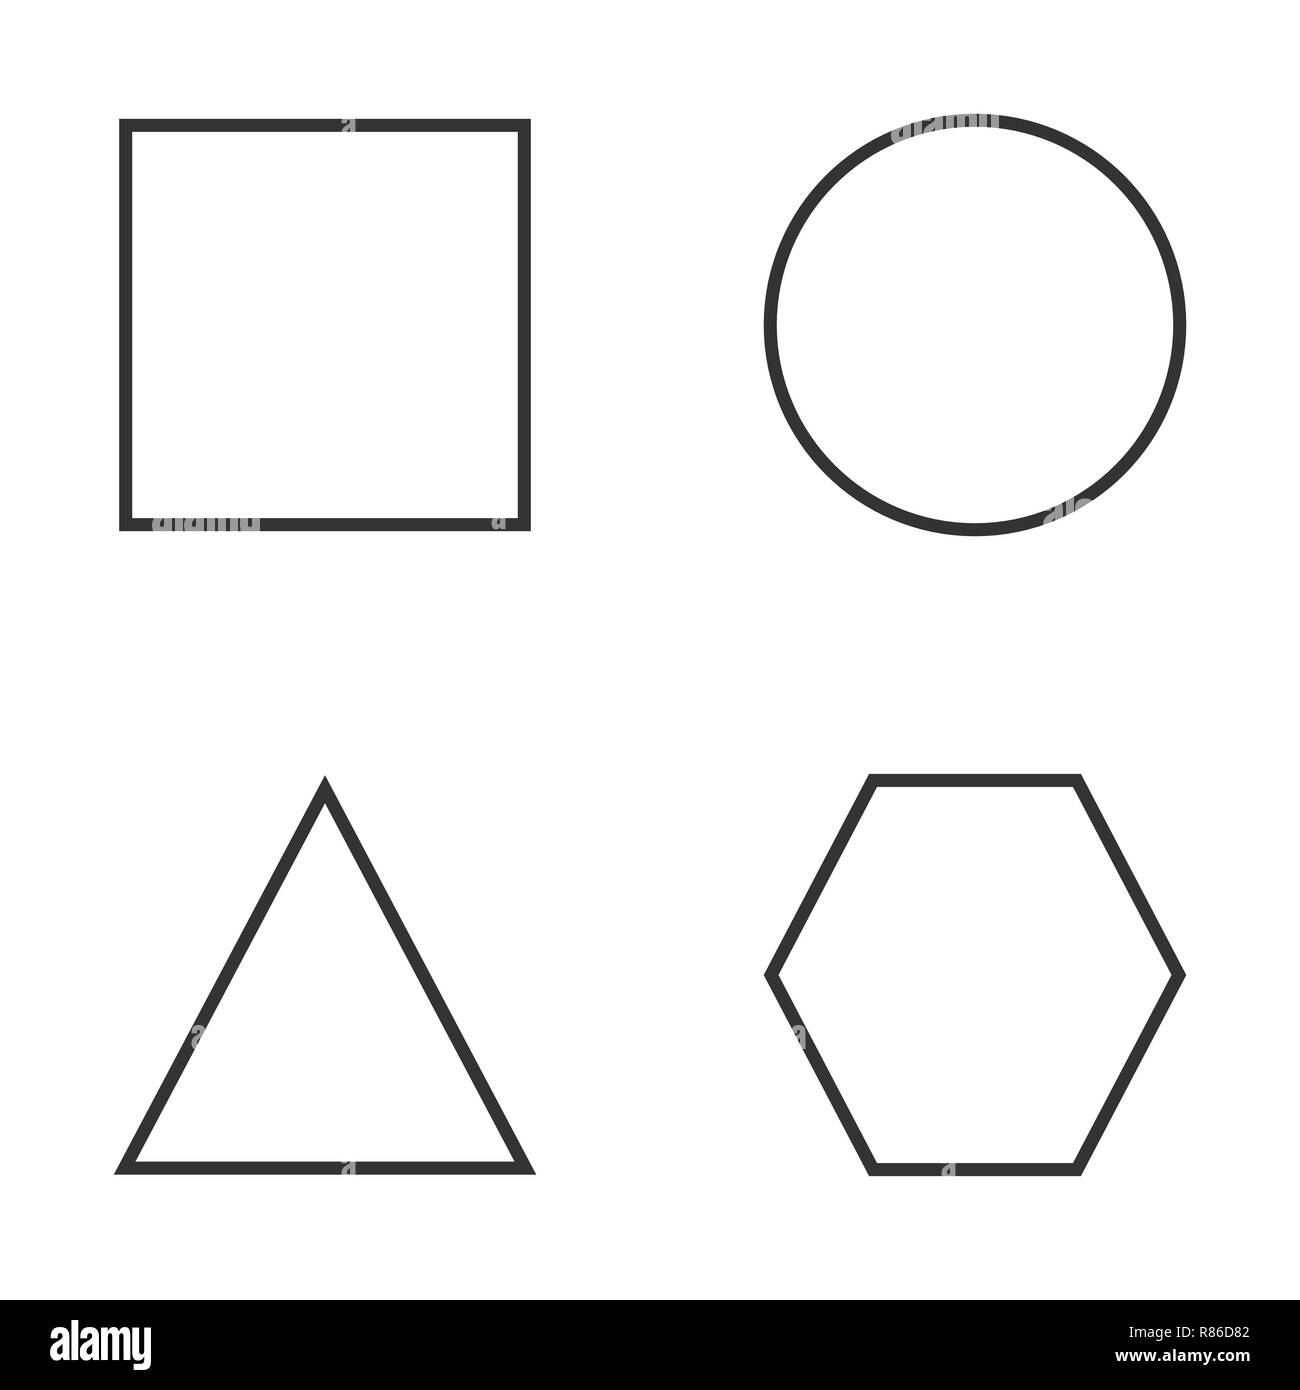 Formes géométriques Banque d'images détourées - Alamy